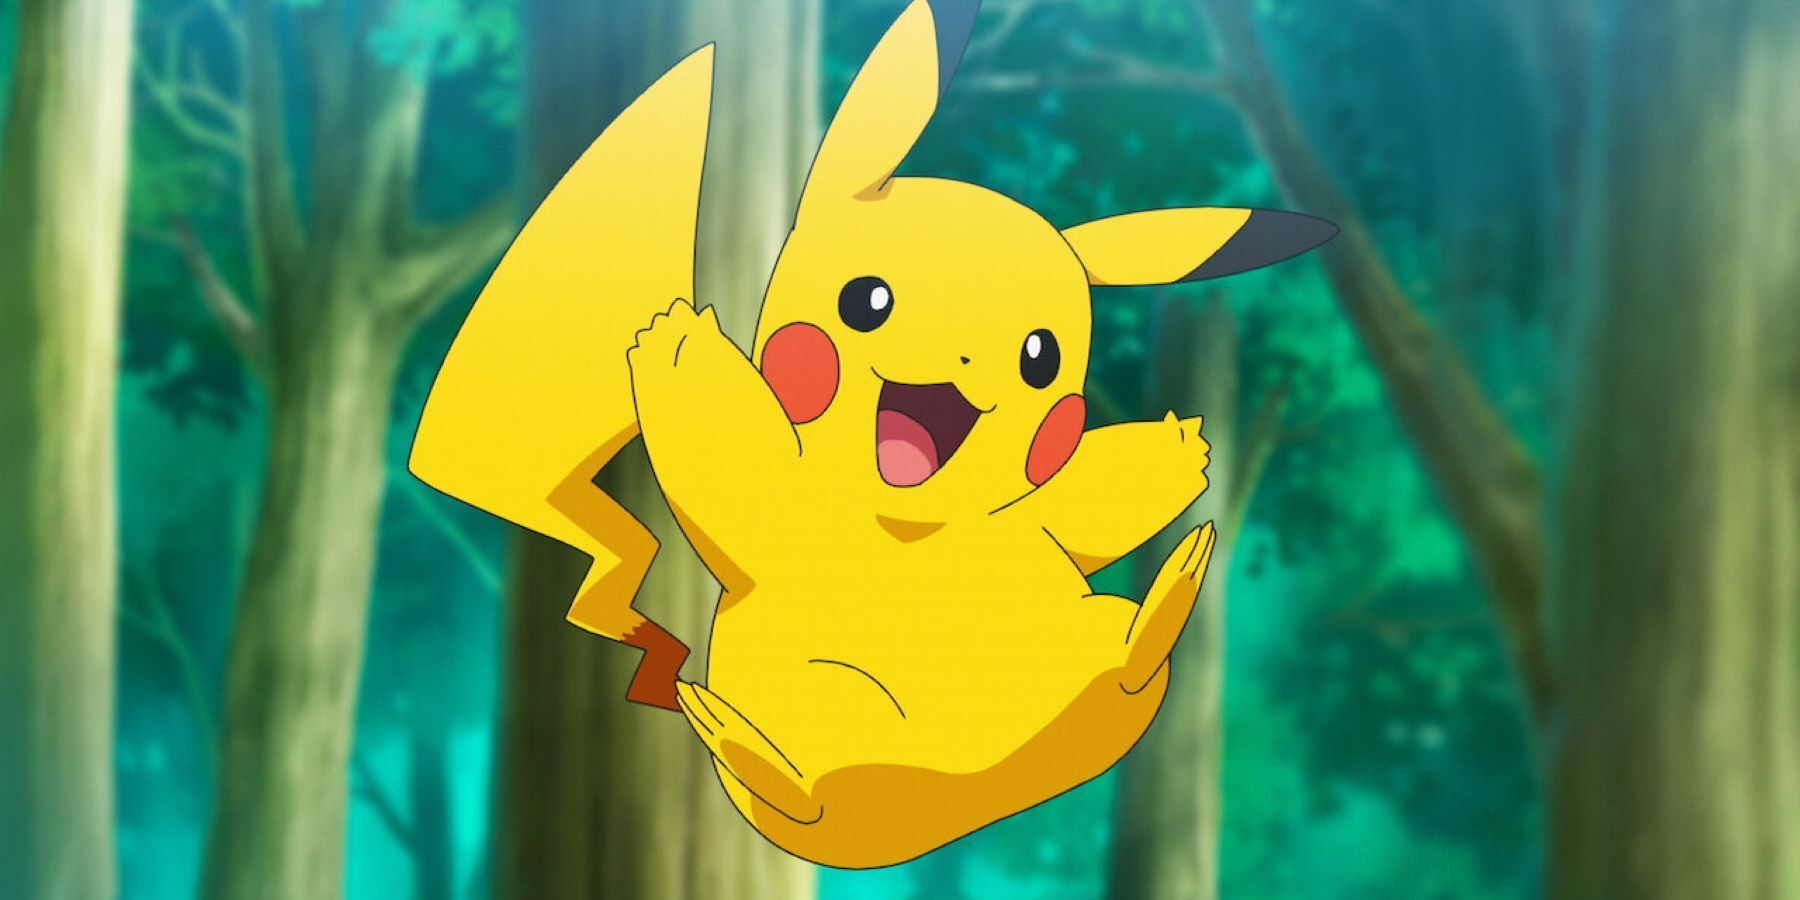 Colar Gold Pikachu é um Pokémon extremamente caro